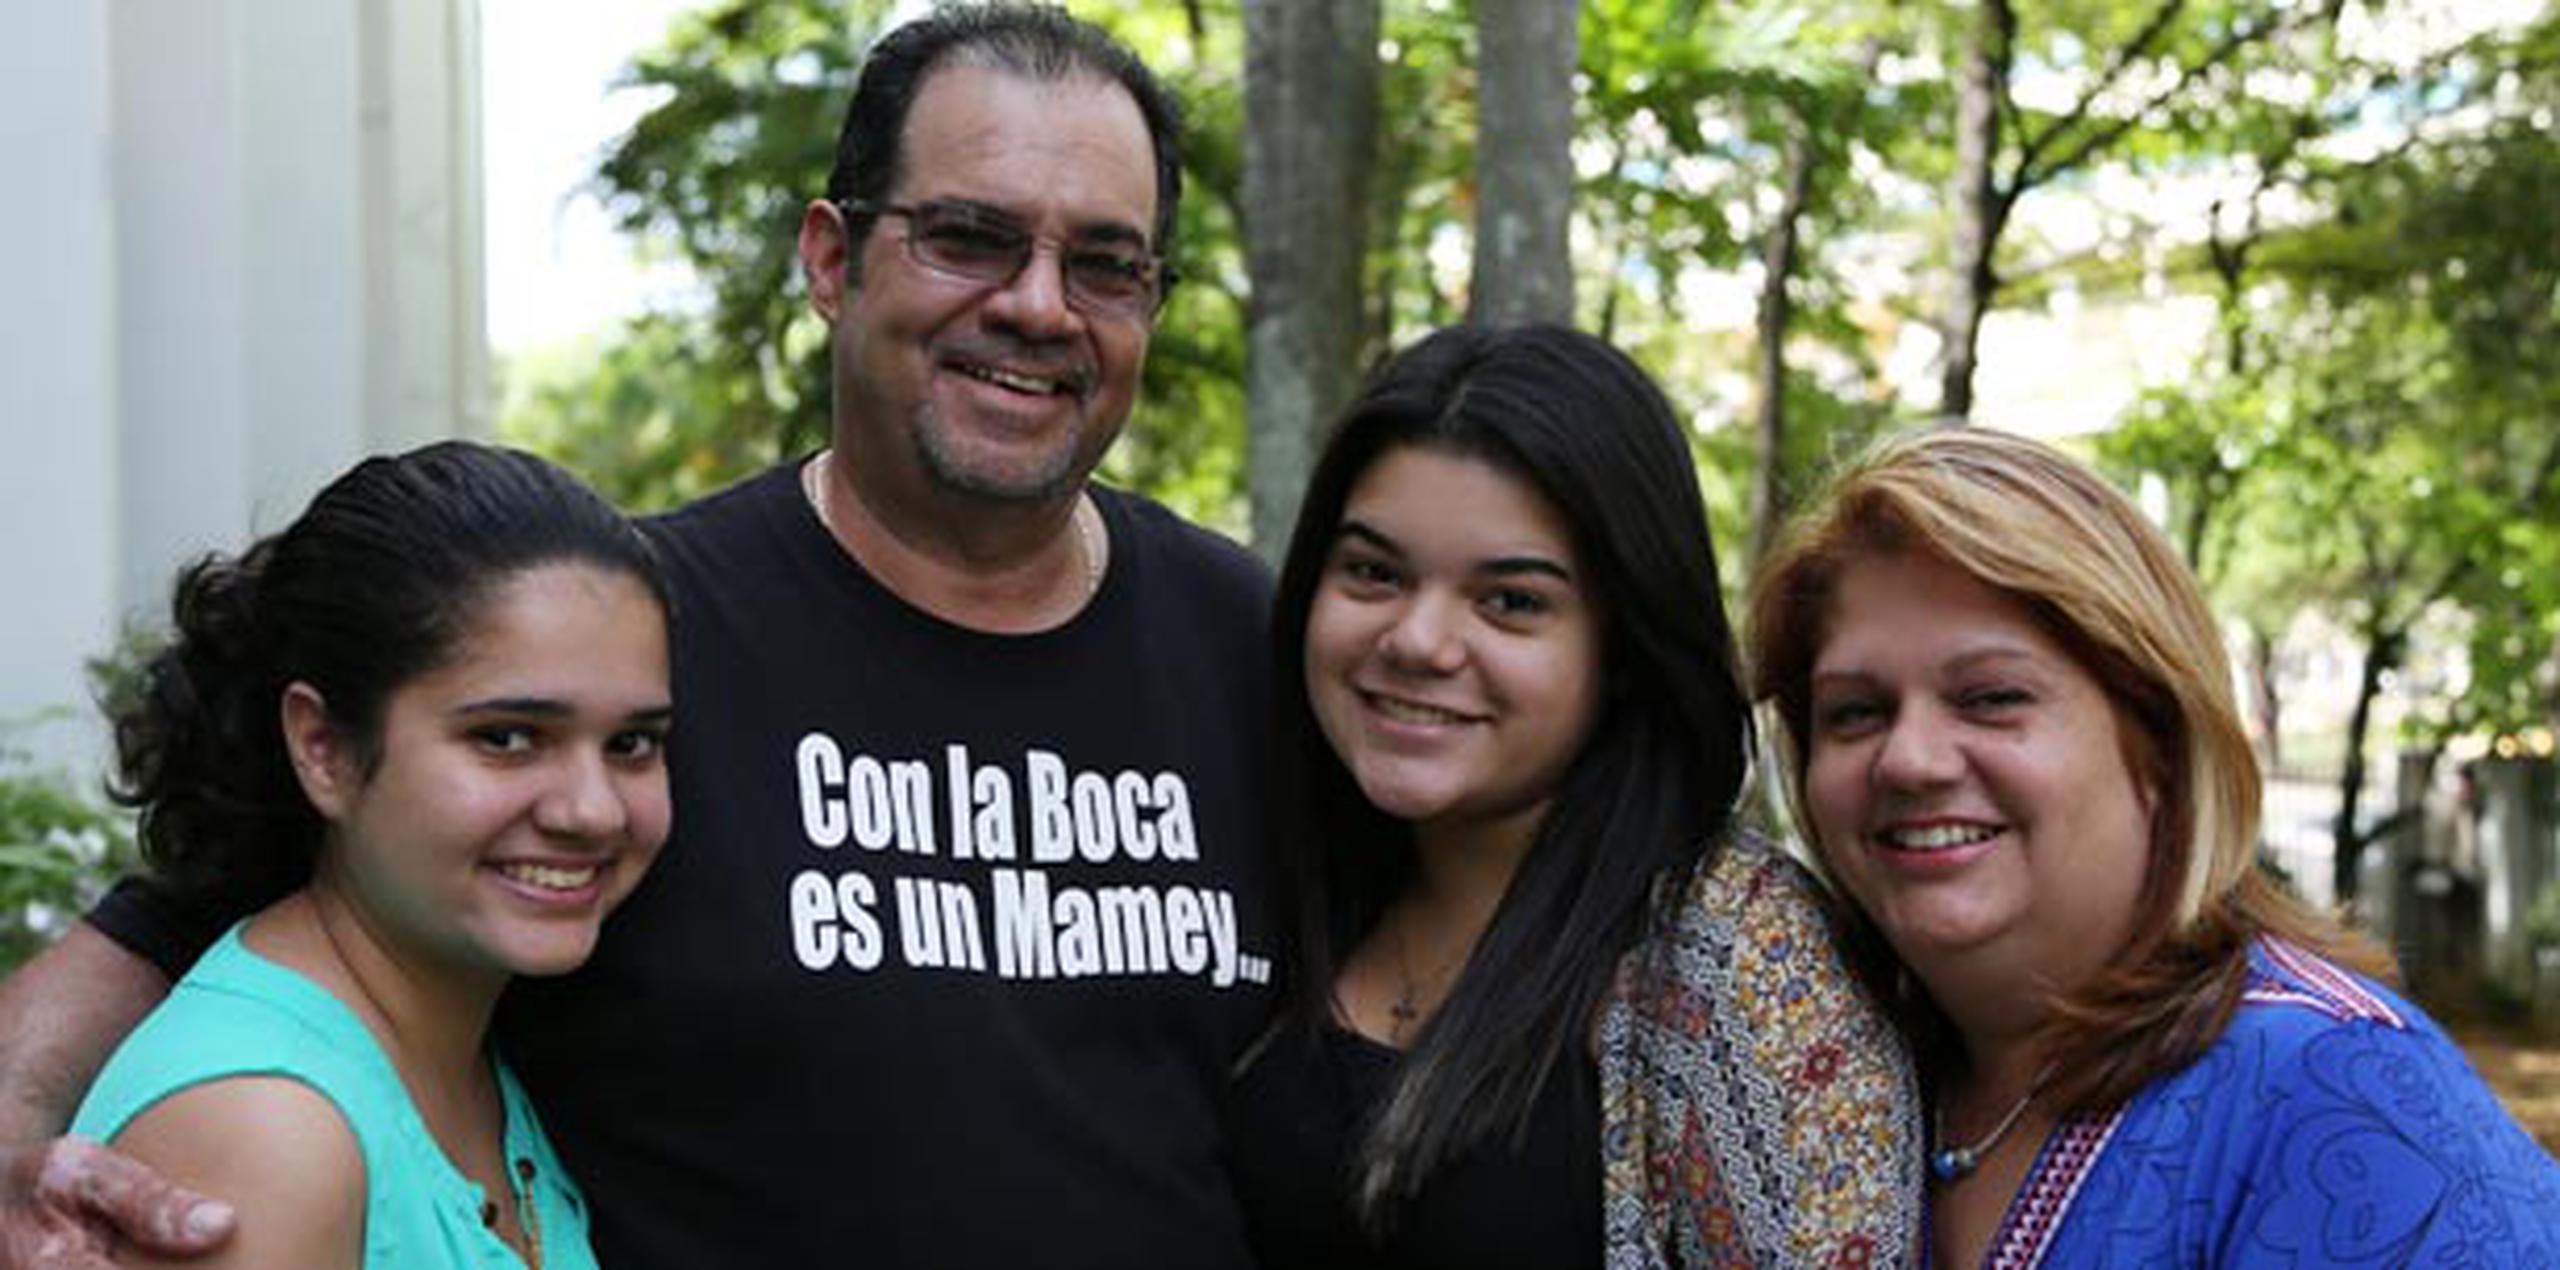 Luis Sánchez disfruta el día a día junto sus hijas Rosivelisse (izquierda), Ana Gabriella (derecha), y su esposa Rosa Rodríguez. (gianfranco.gaglione@gfrmedia.com)